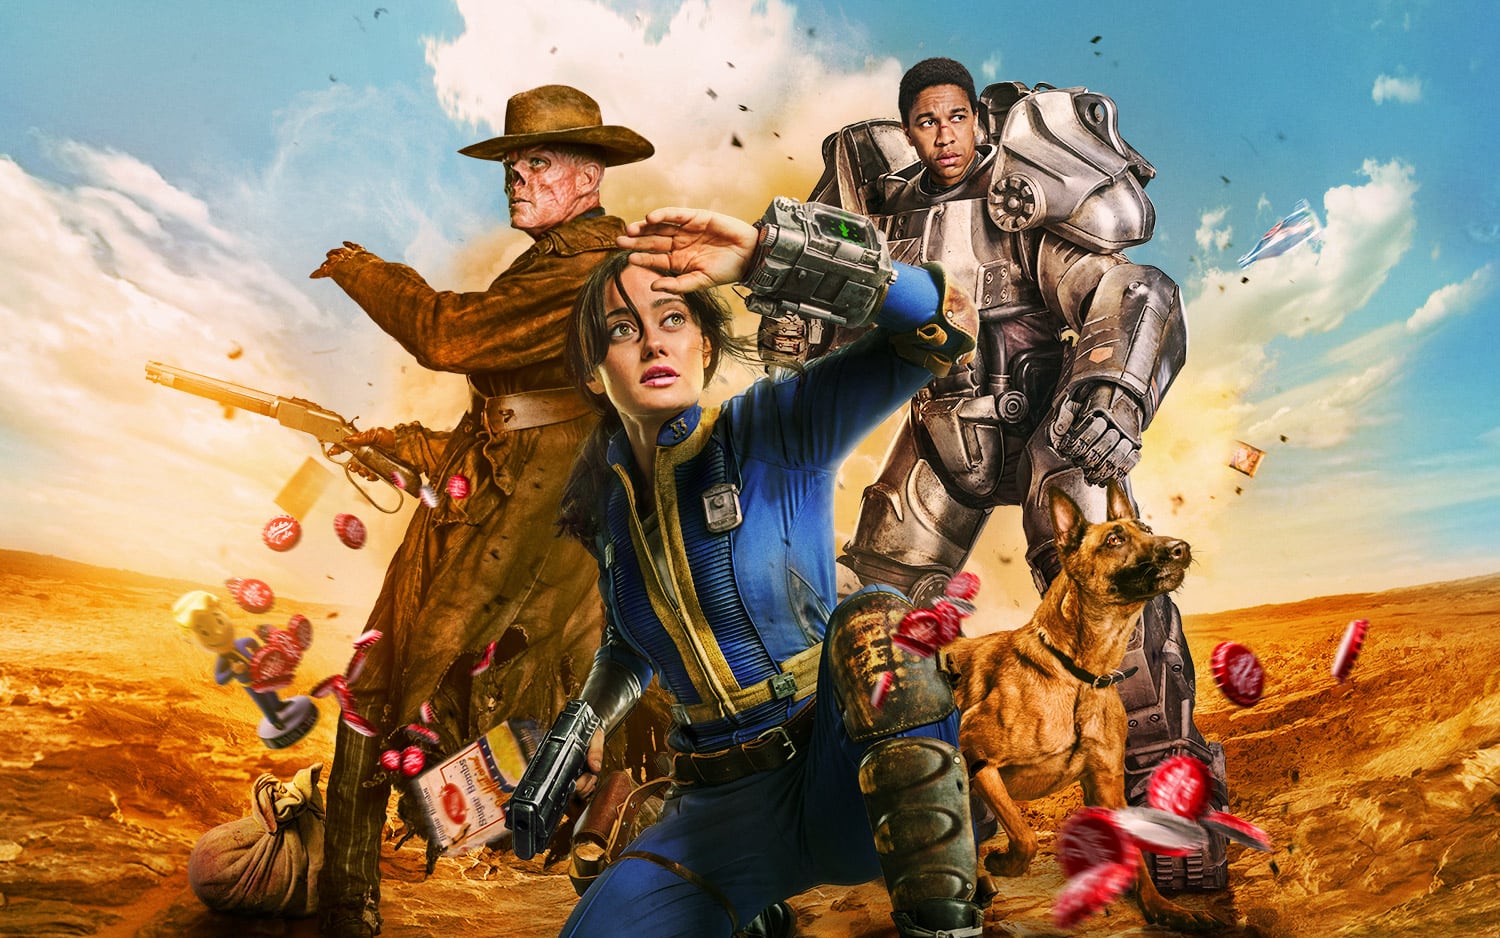 De apocalyps is een beetje vreemd in de eerste trailer voor tv-serie Fallout